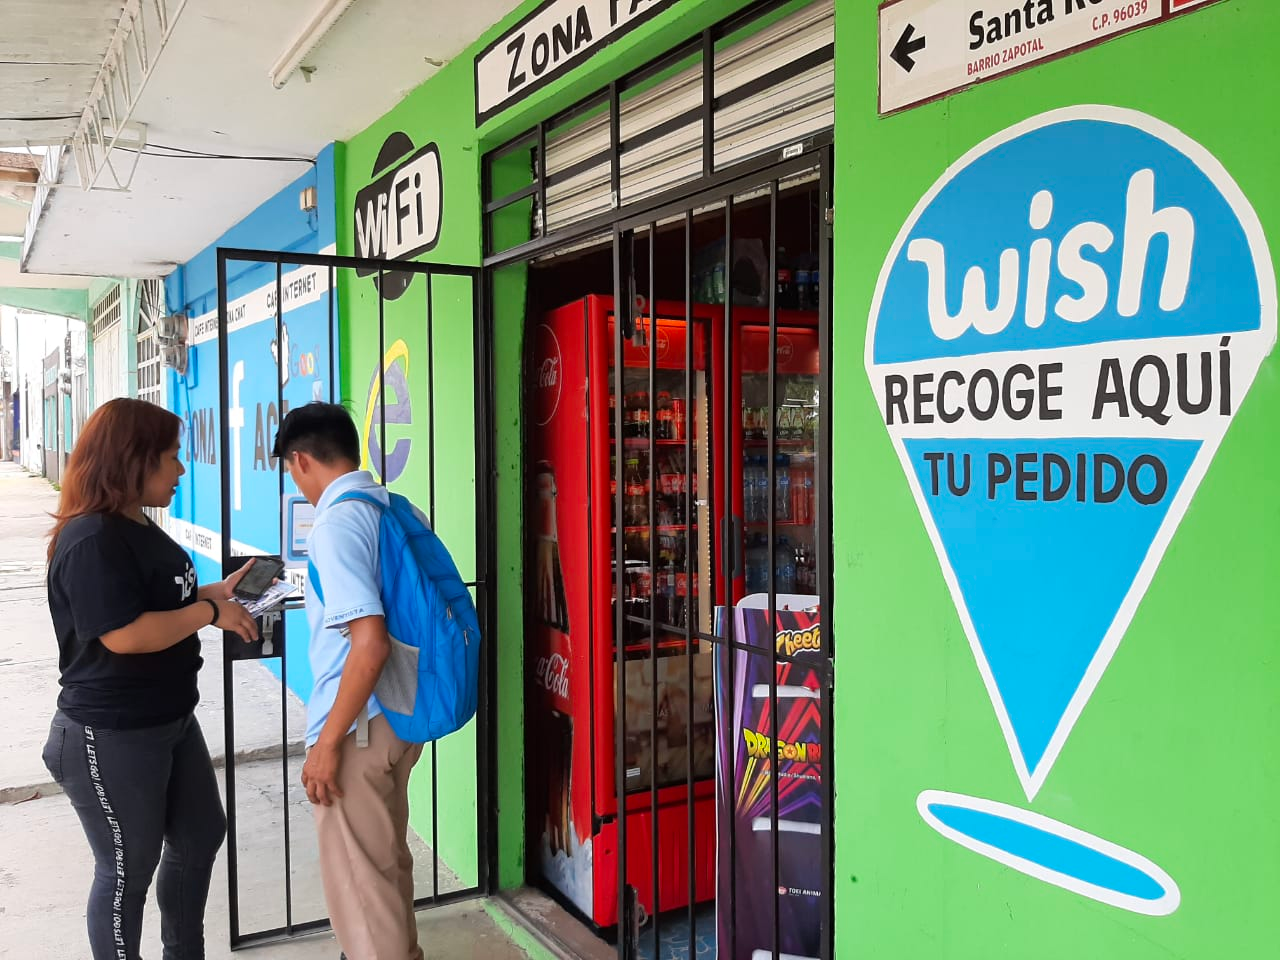 Ecco come Wish Local sta accendendo lo spirito imprenditoriale a Veracruz in Messico